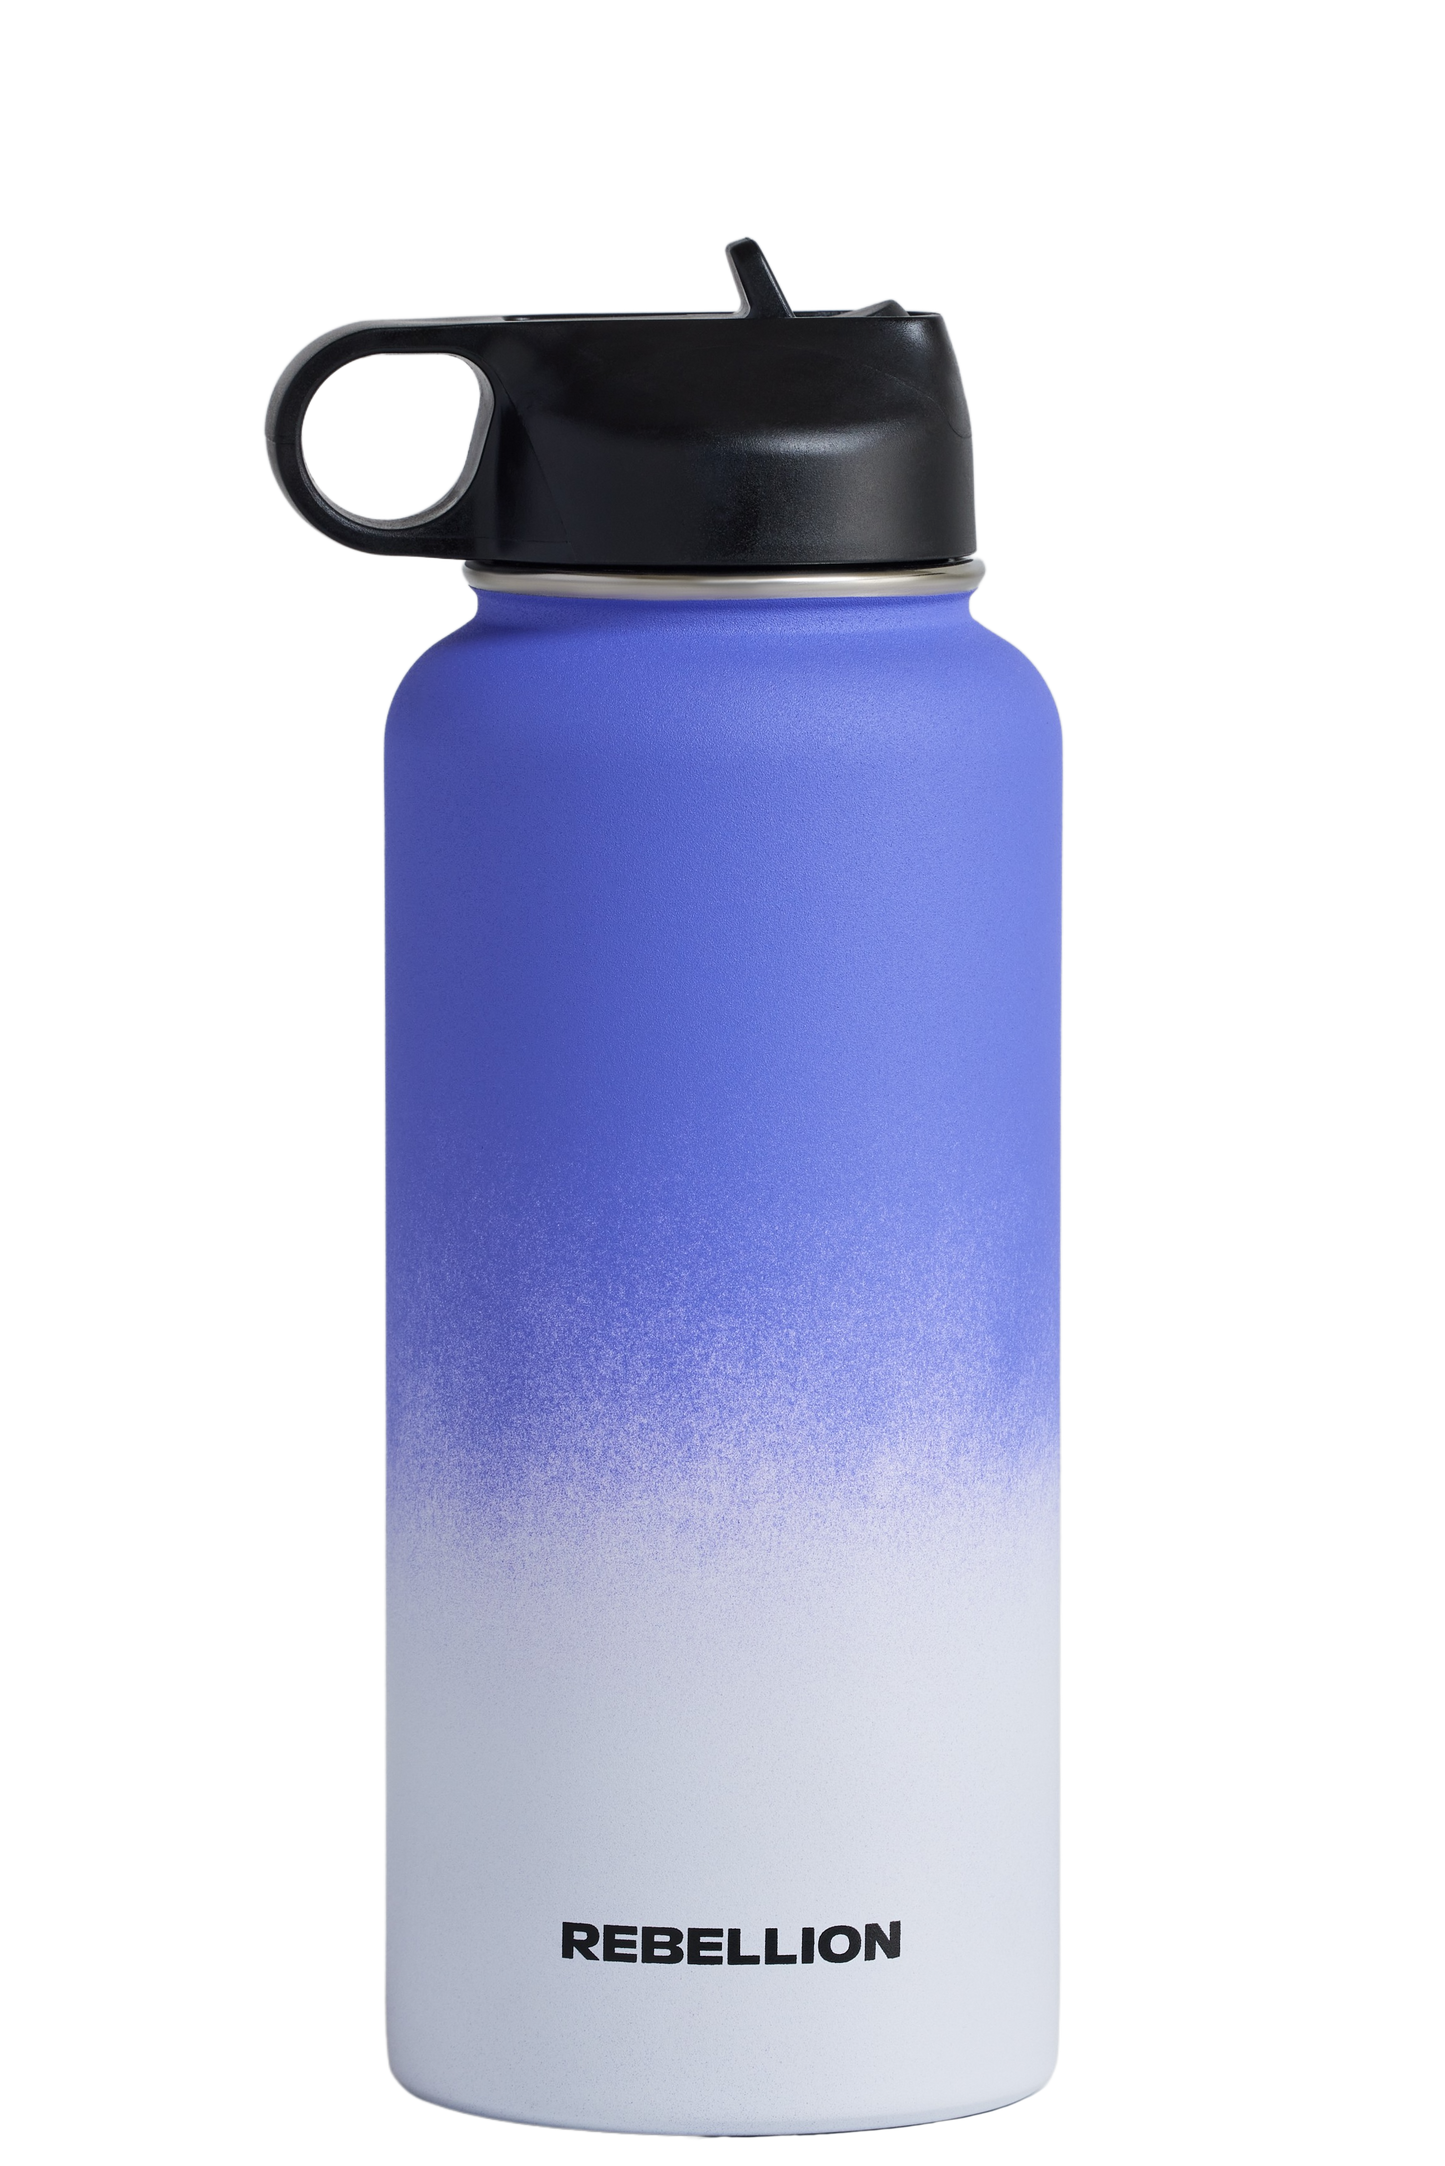 Rebellion Water Bottle